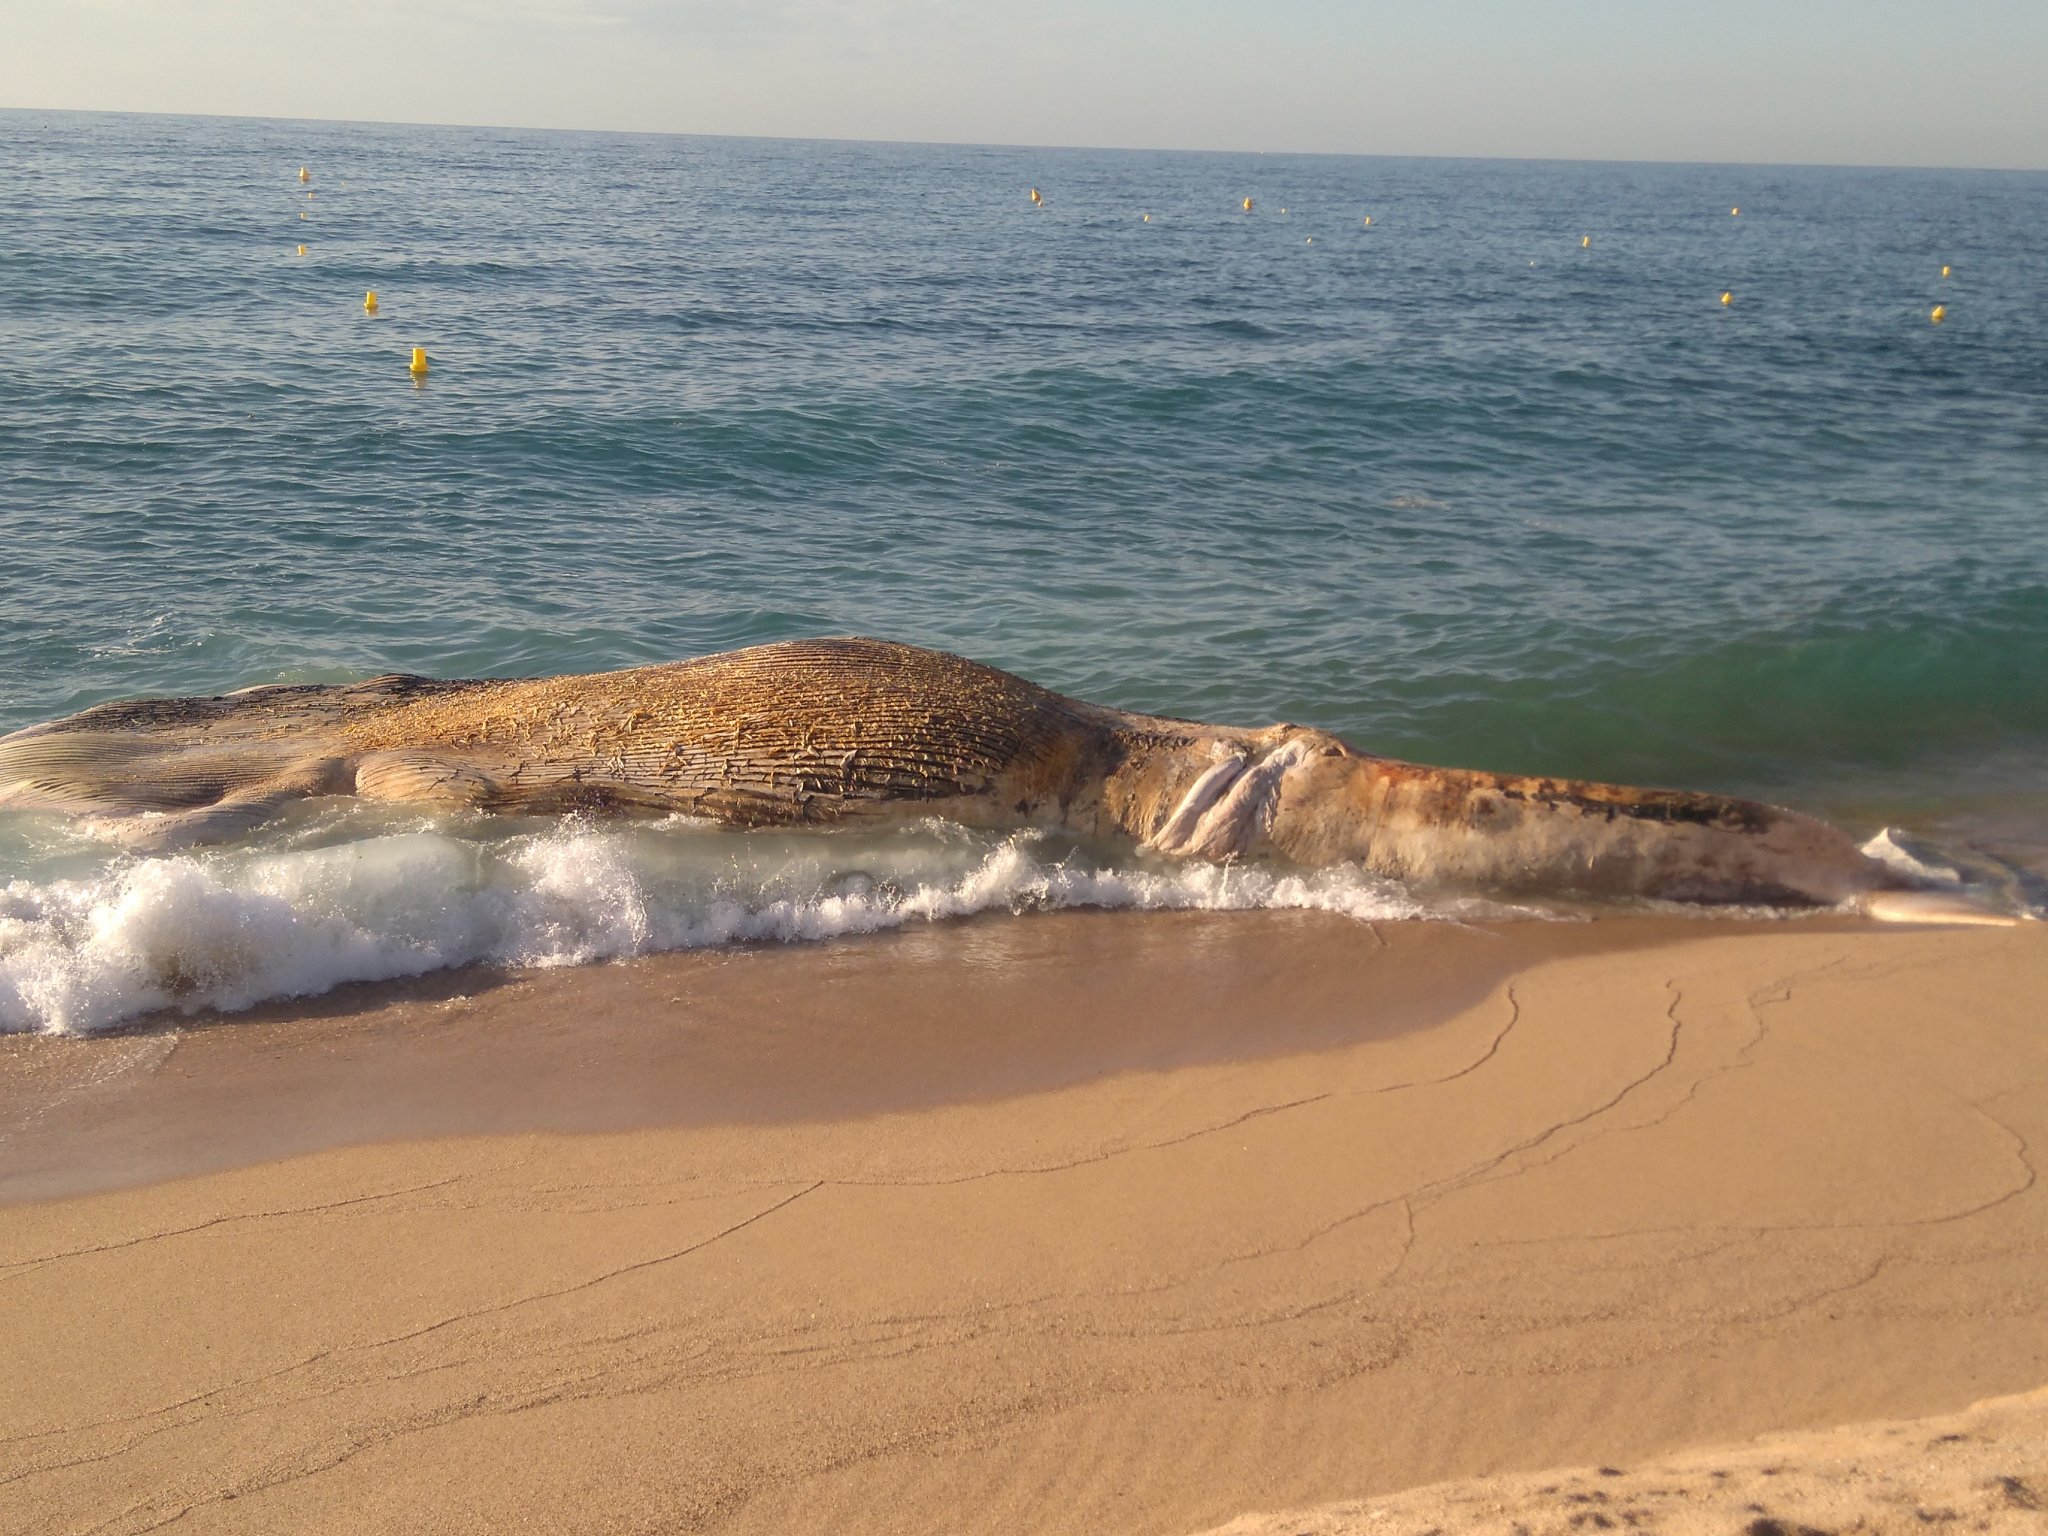 Apareix morta una balena a la platja de Lloret